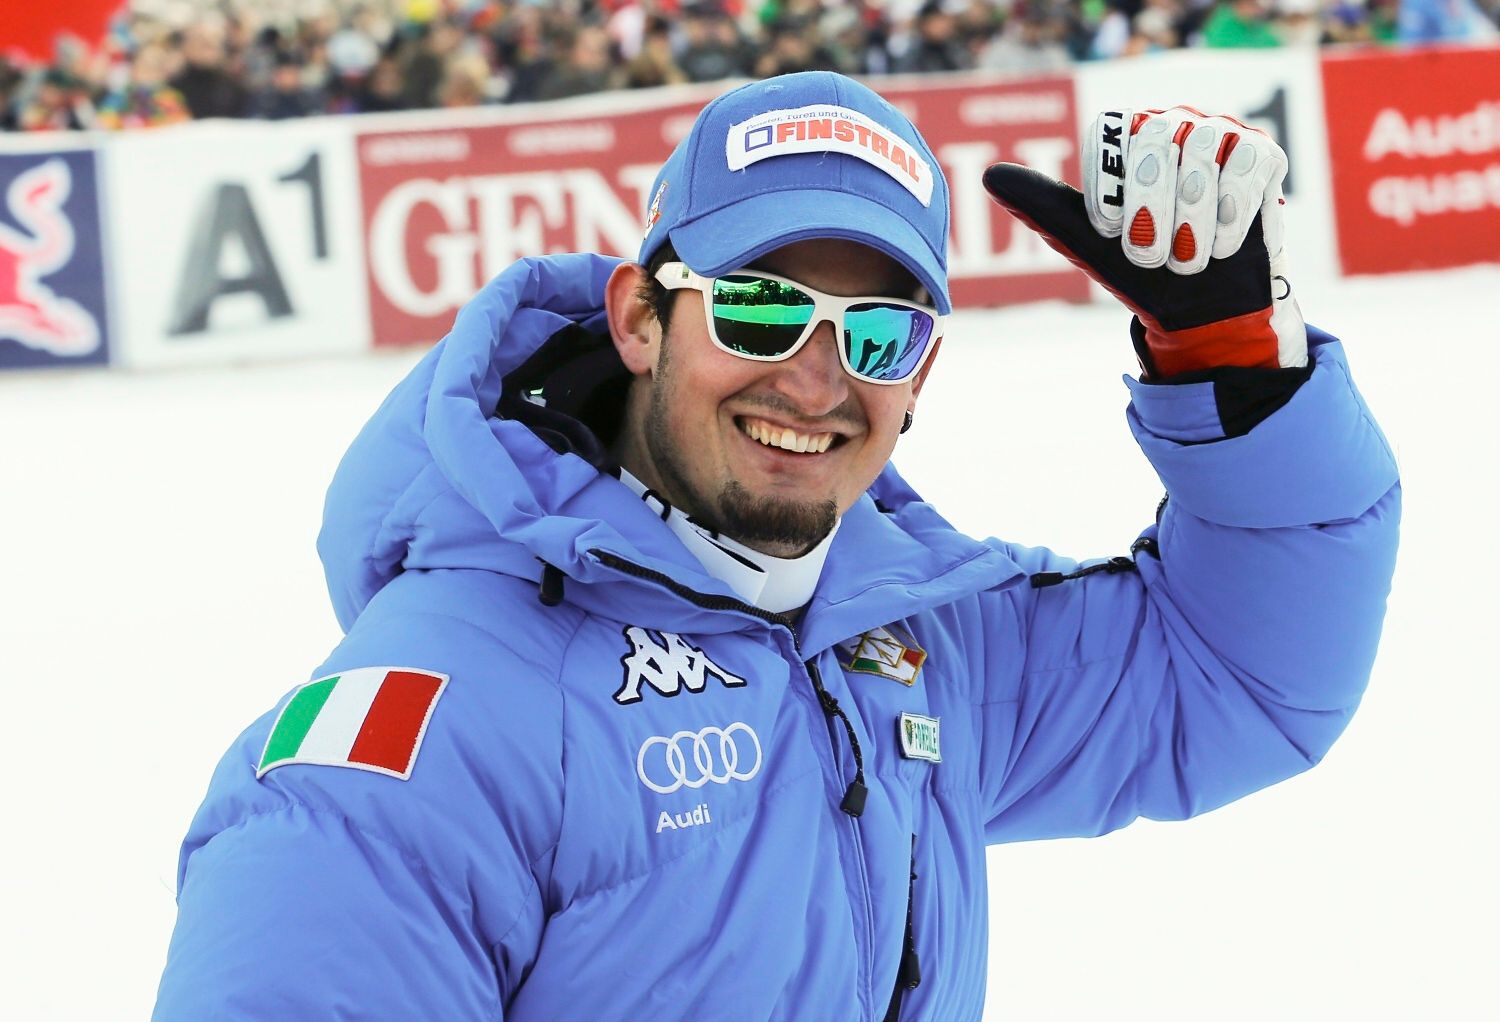 Detentore del record parigino.  Lo sciatore italiano vince la discesa libera a Bormio per la sesta volta in carriera